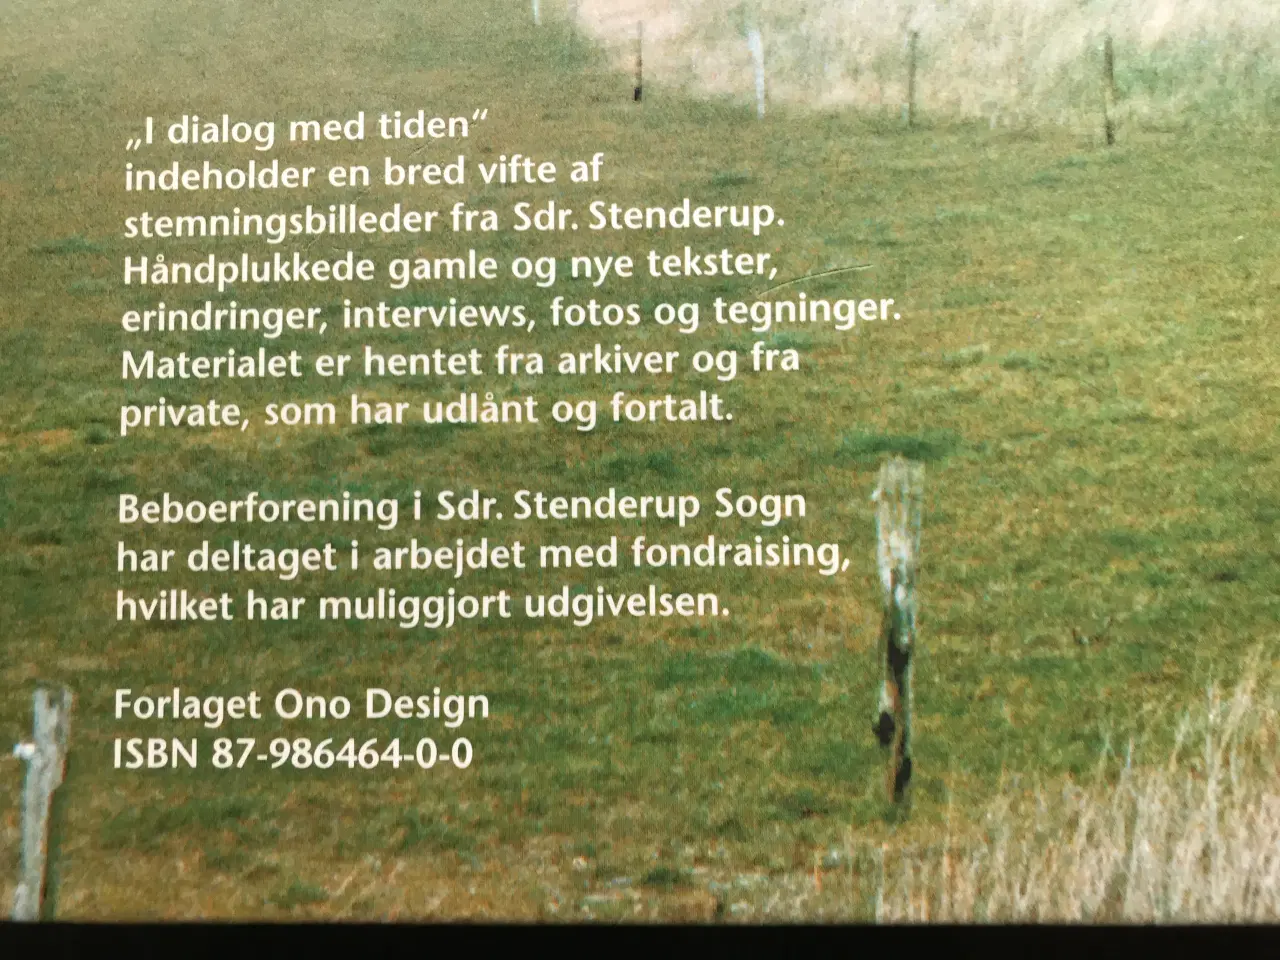 Billede 4 - Flot Sdr. Stenderup-bog fra 1997